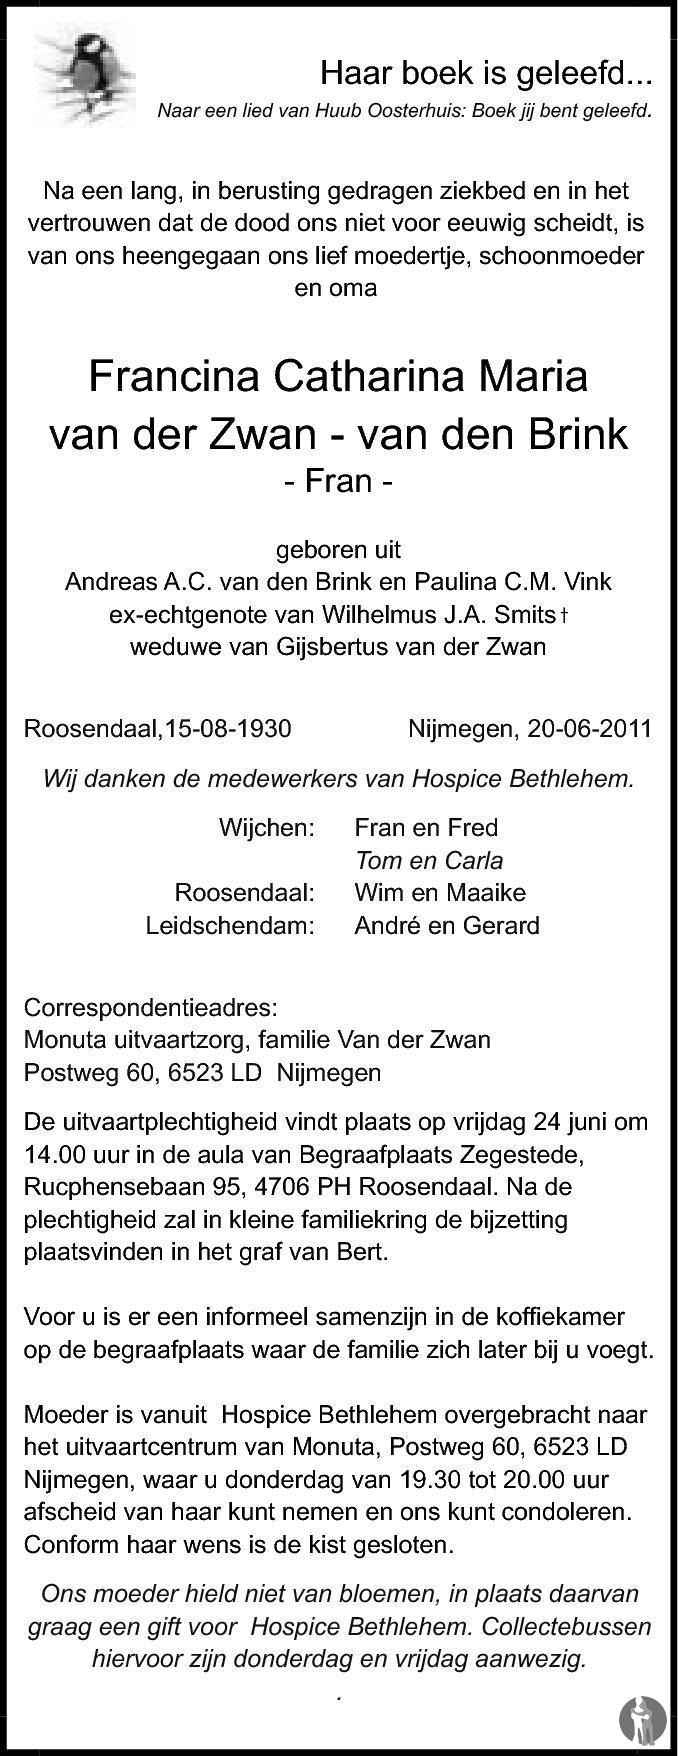 Overlijdensbericht van Francina Catharina Maria (Fran) van der Zwan - van den Brink in BN DeStem